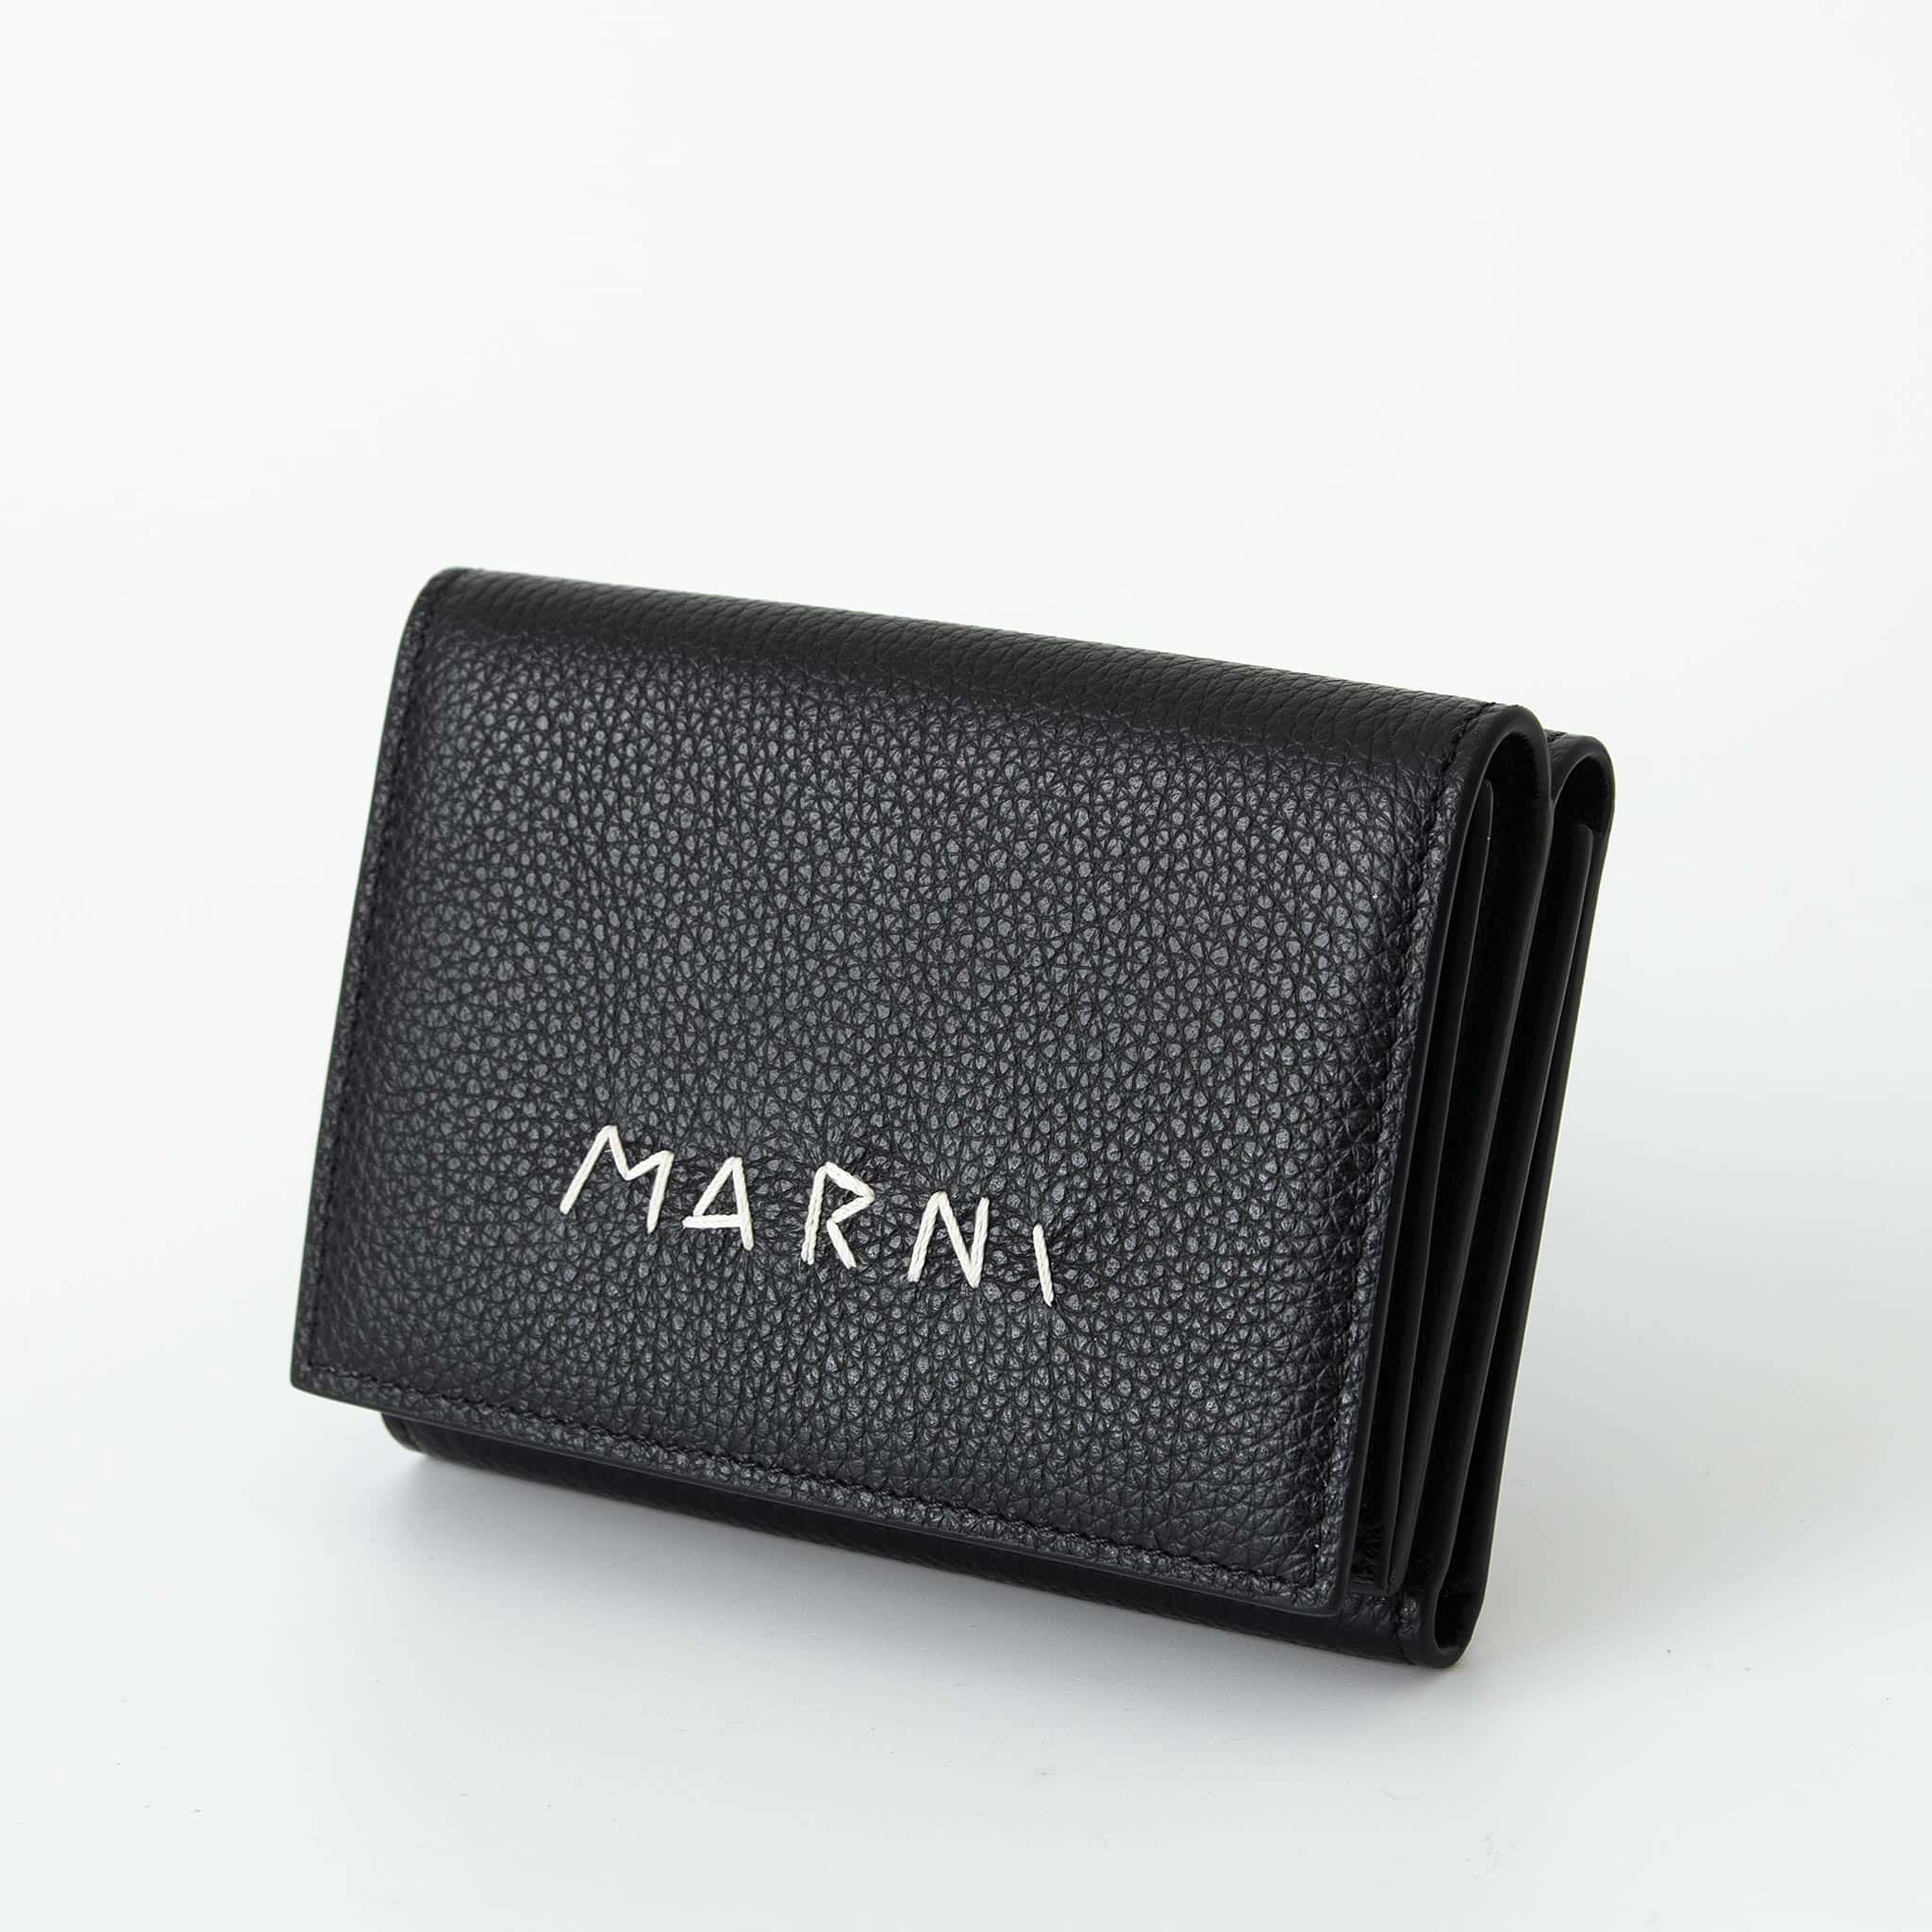 マルニ 財布 メンズ マルニ MARNI 財布 メンズ 三つ折り財布 ブラック TRIFOLD [メンディング] PFMI0097U0 P6533 00N99 BLACK【ミニ財布】